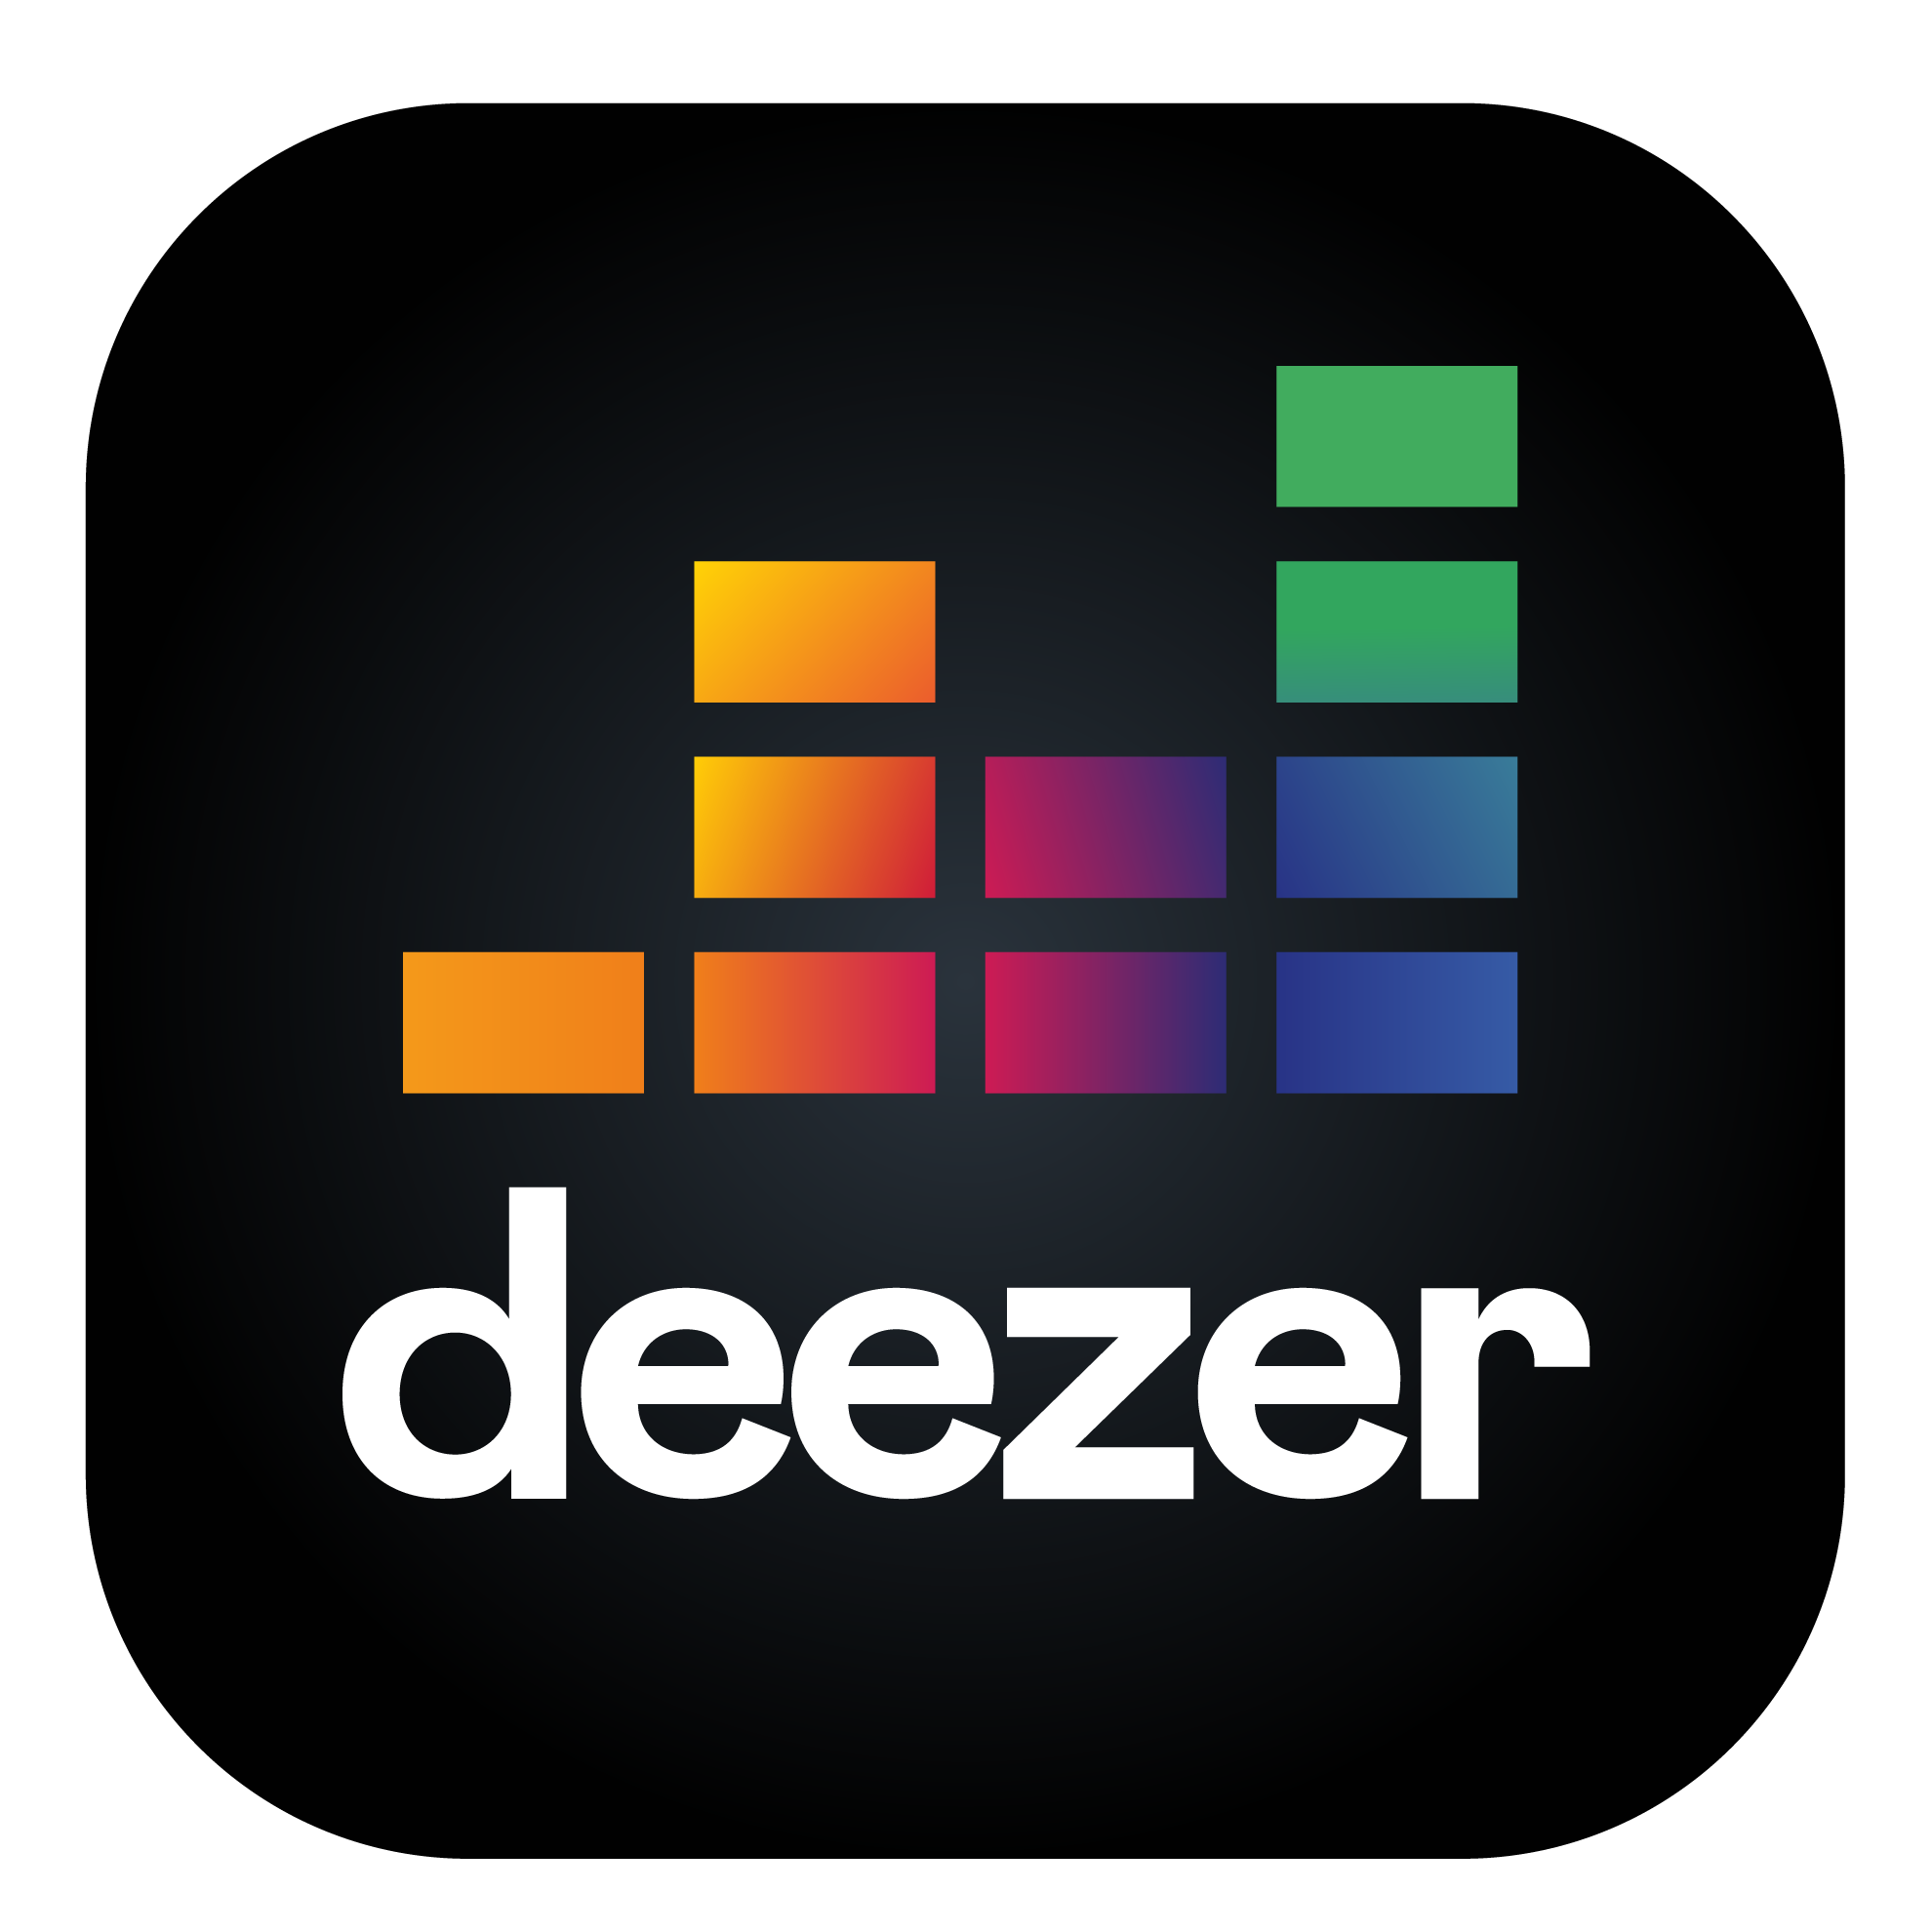 App de música Deezer incluido al realizar tu Portabilidad